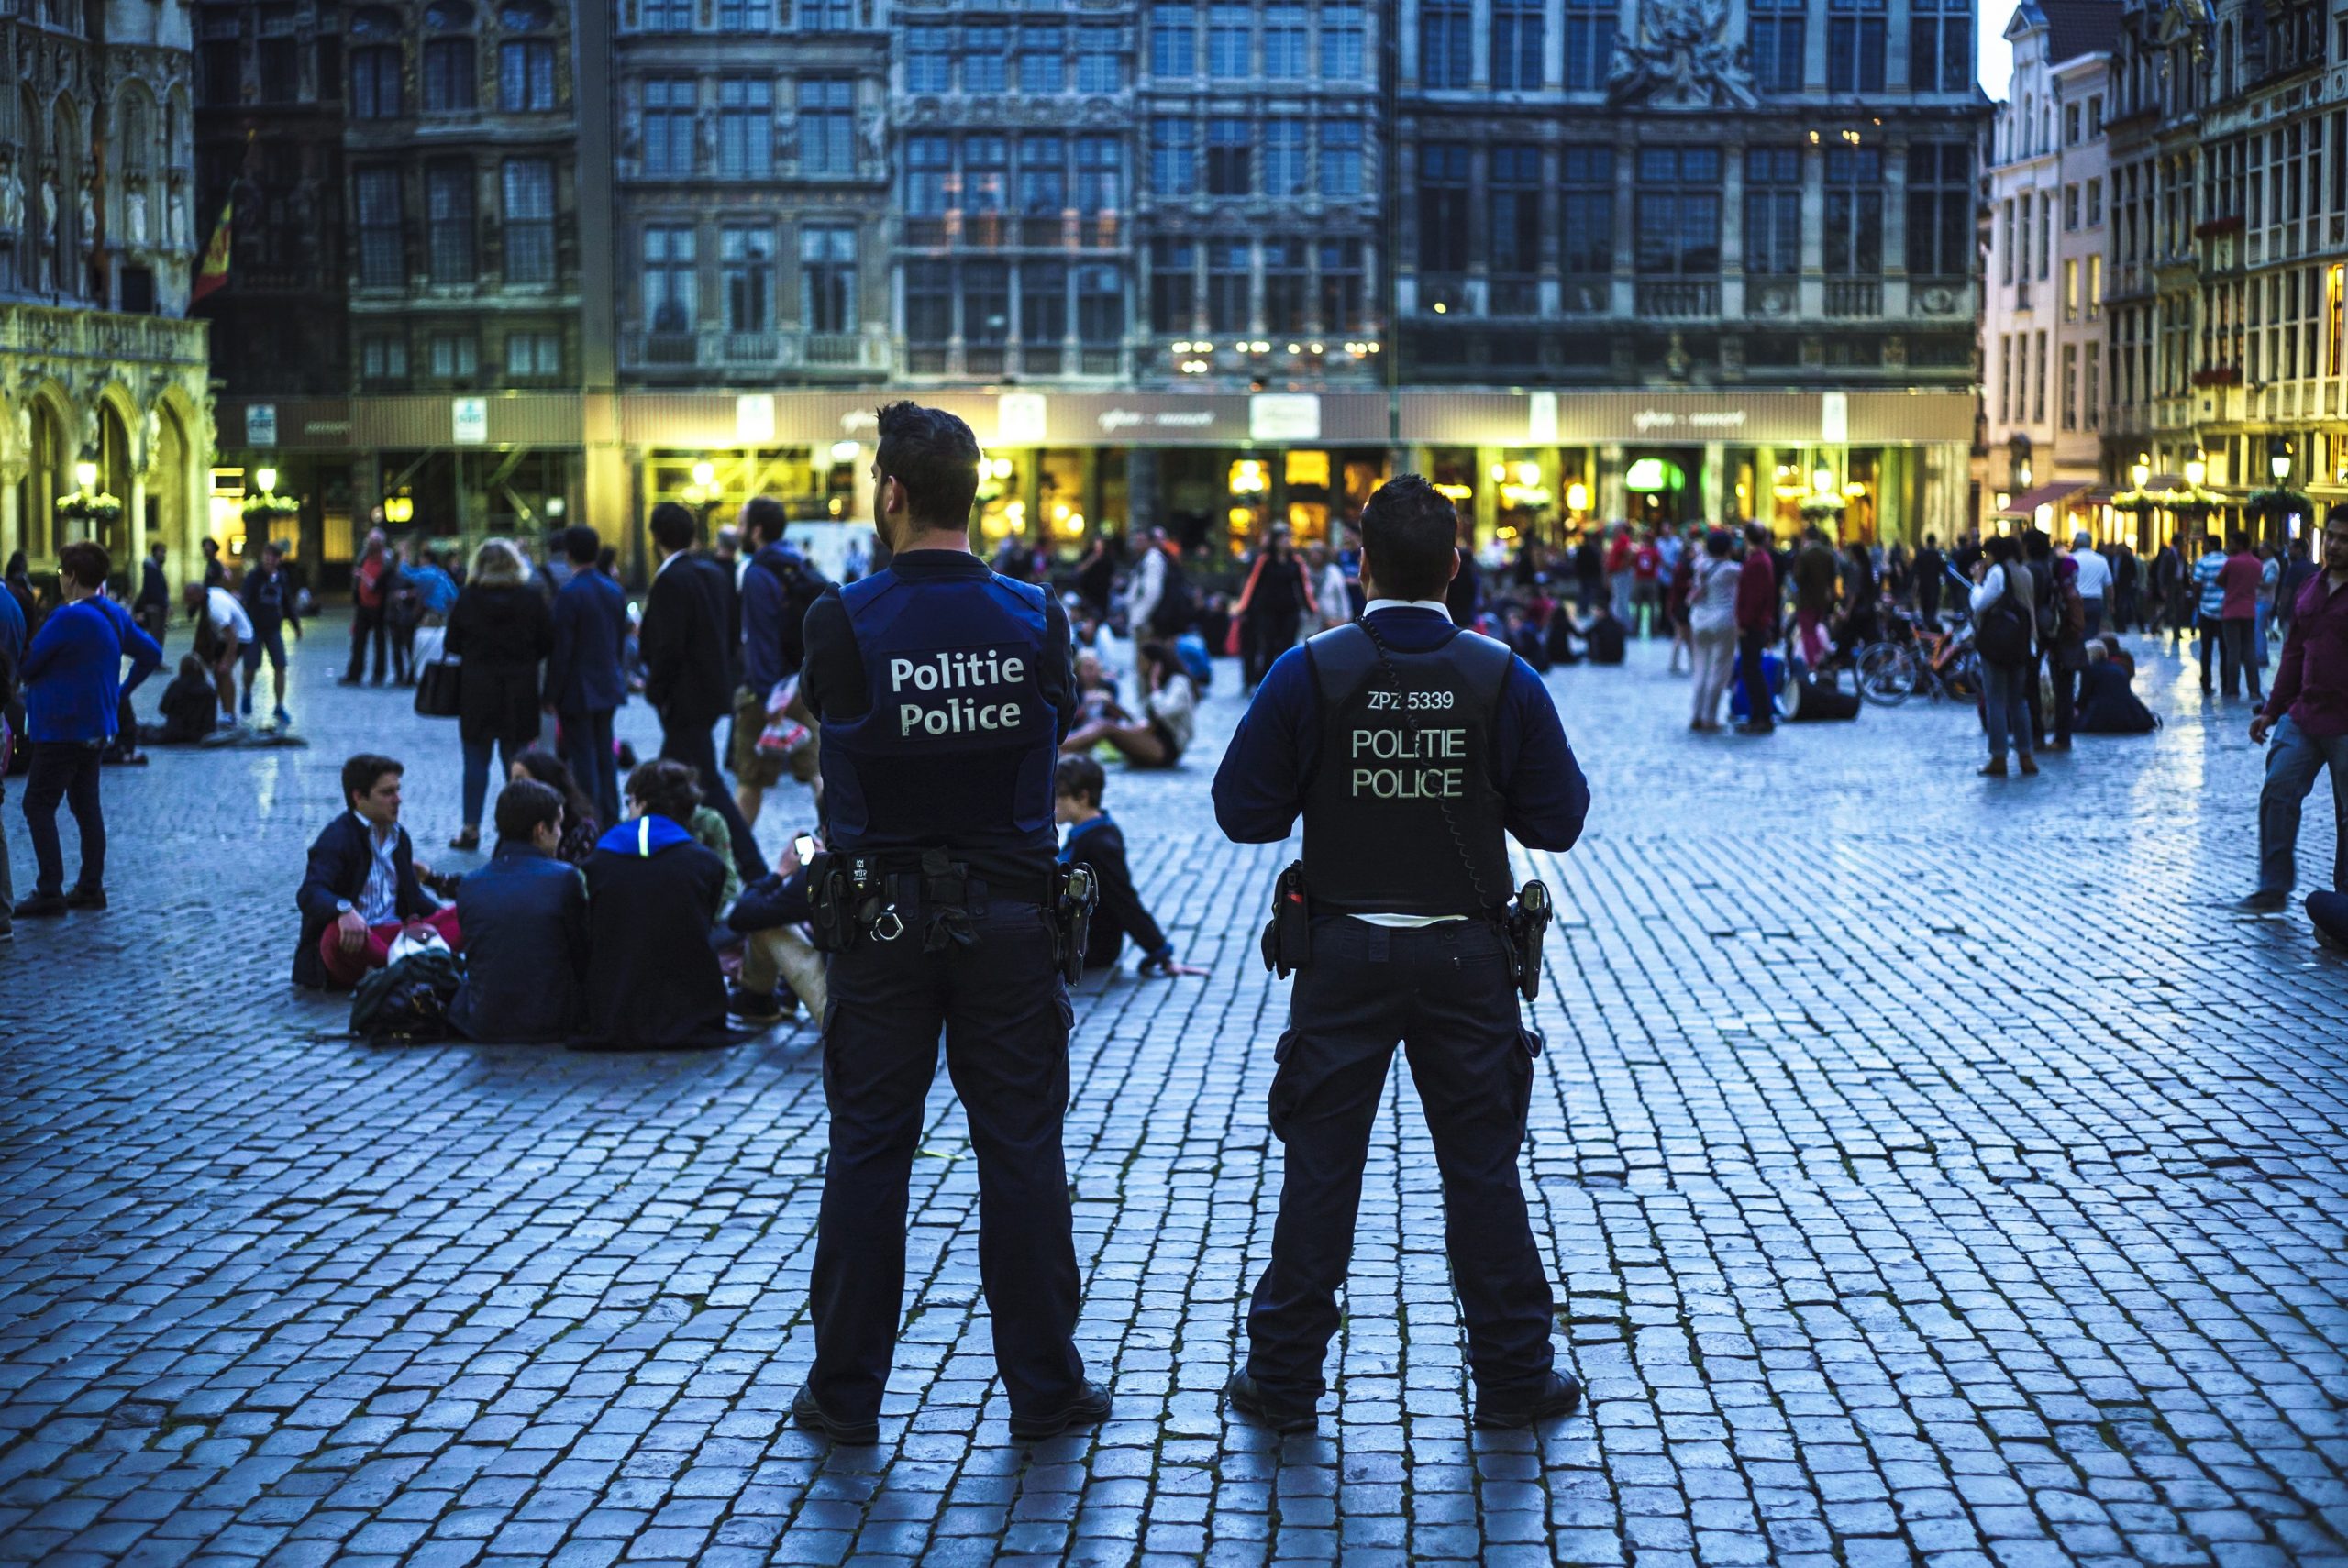 ملف:استراتيجيات وتشريعات مكافحة الإرهاب داخل الاتحاد الأوروبي